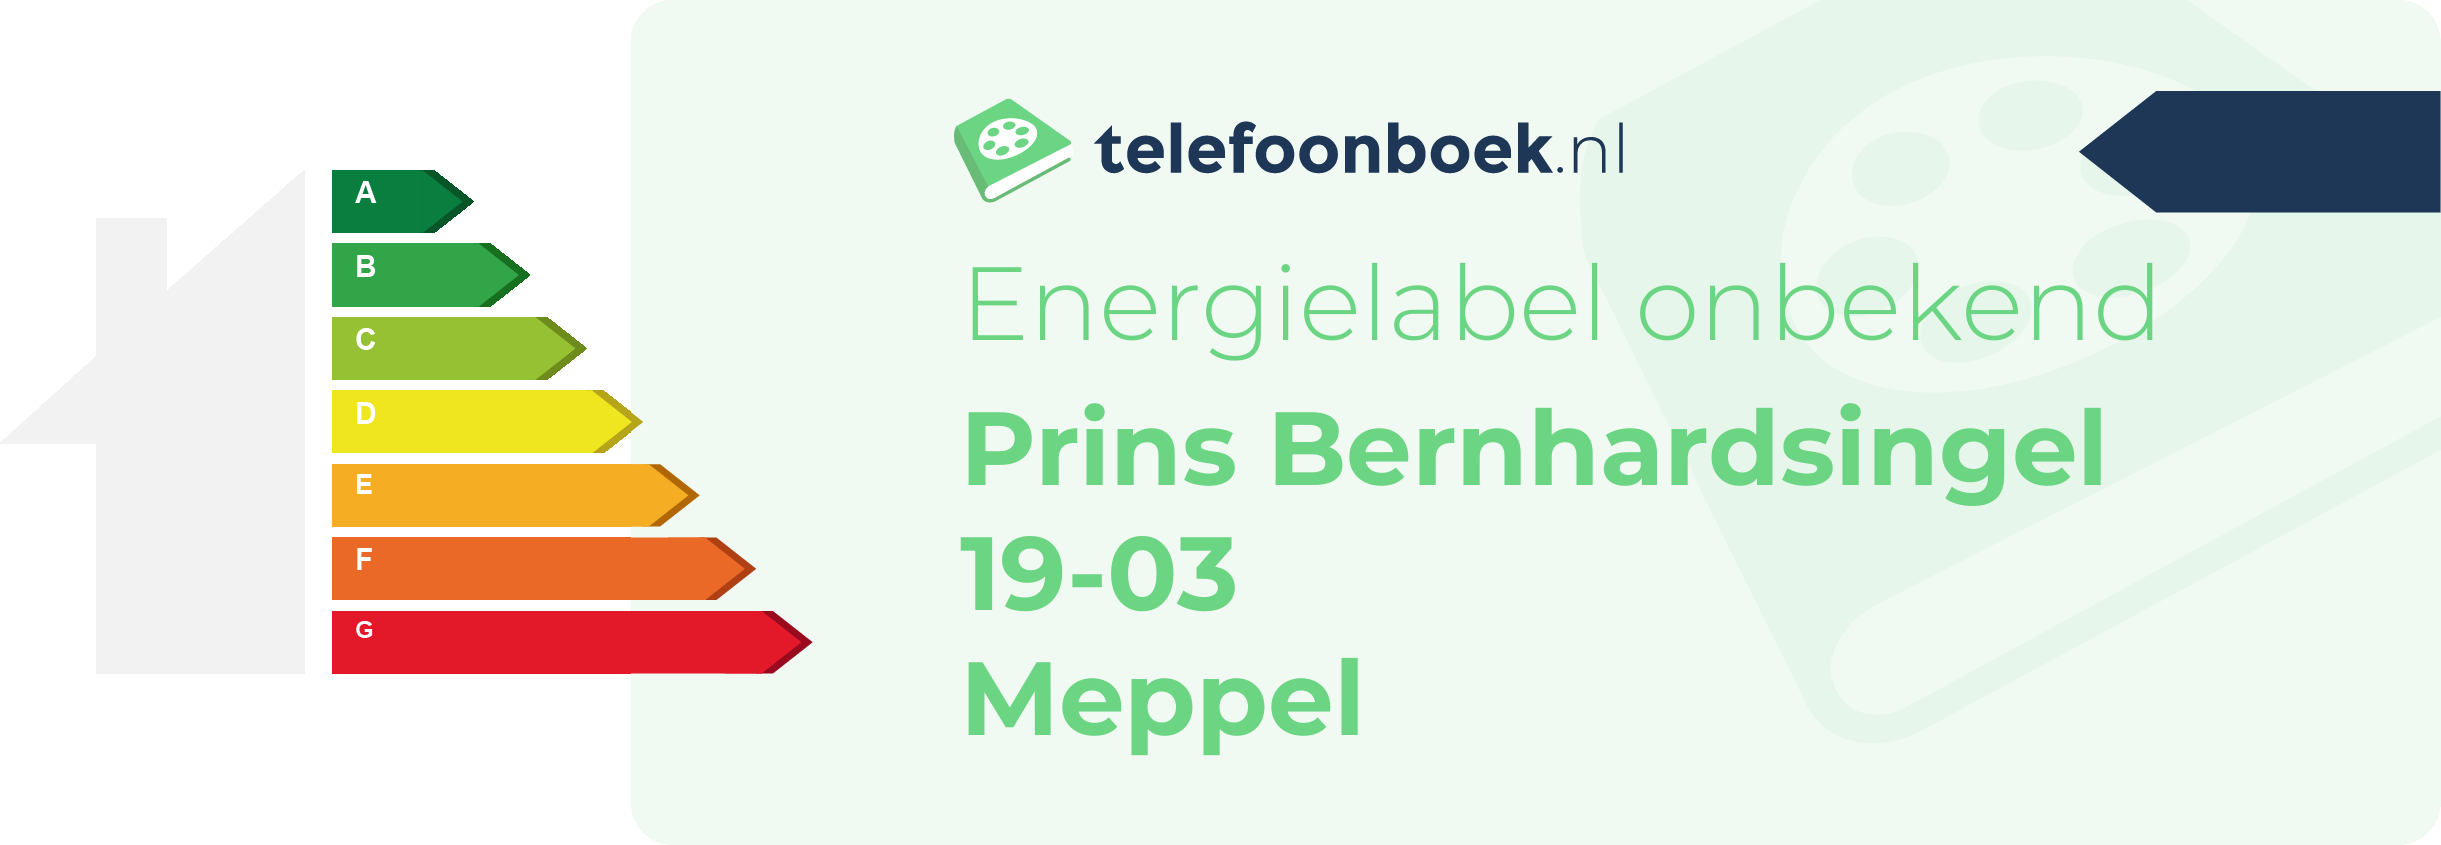 Energielabel Prins Bernhardsingel 19-03 Meppel